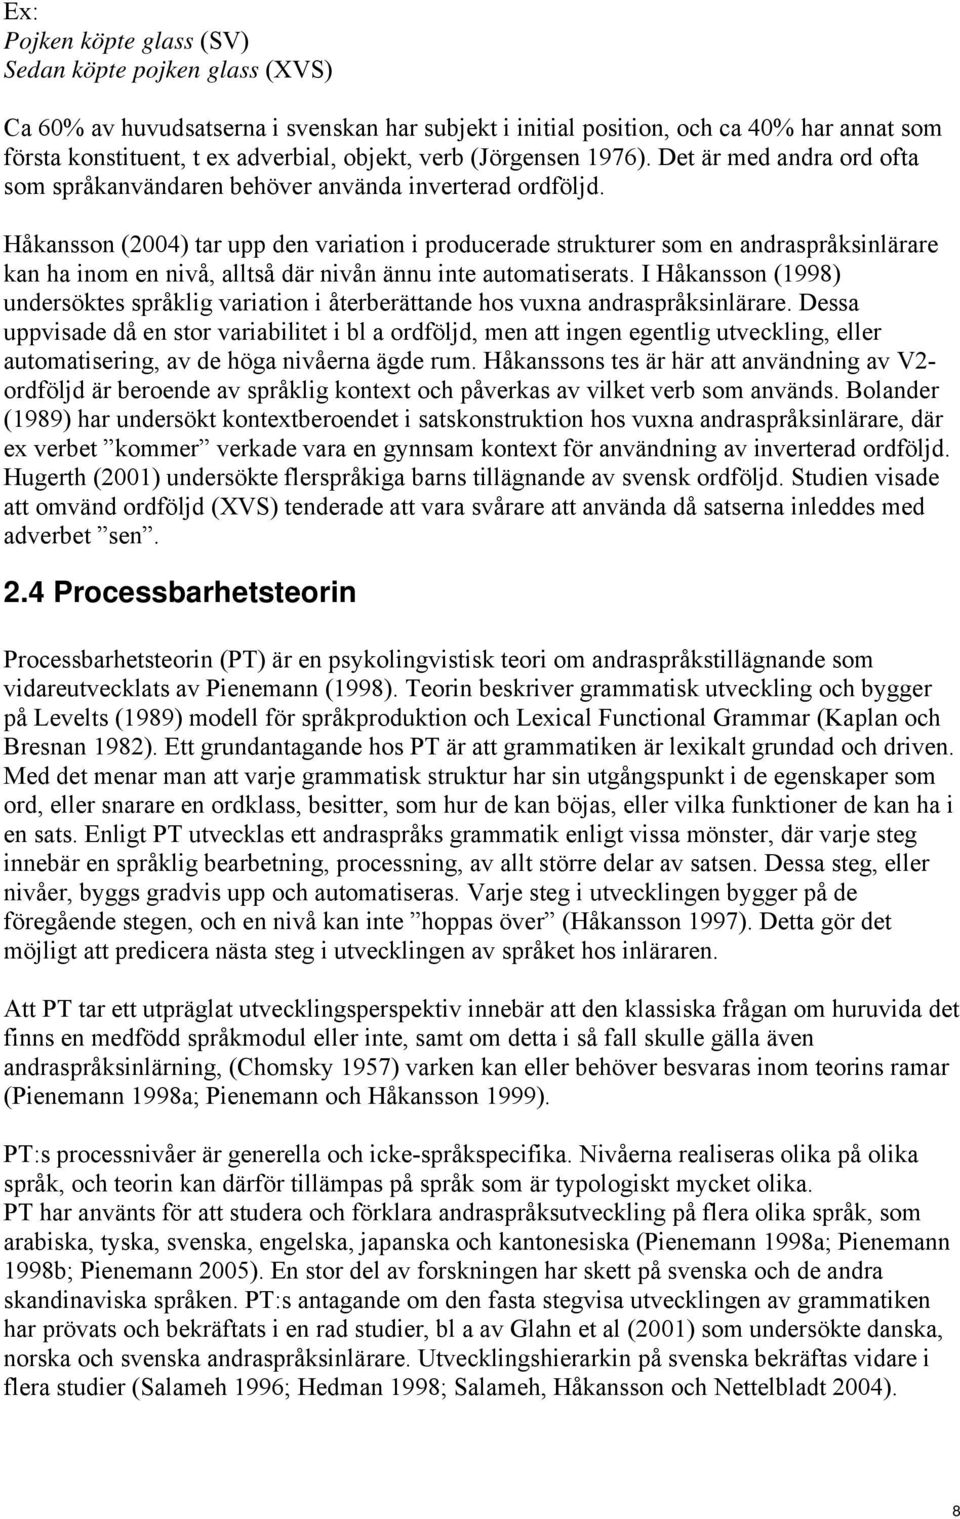 Håkansson (2004) tar upp den variation i producerade strukturer som en andraspråksinlärare kan ha inom en nivå, alltså där nivån ännu inte automatiserats.